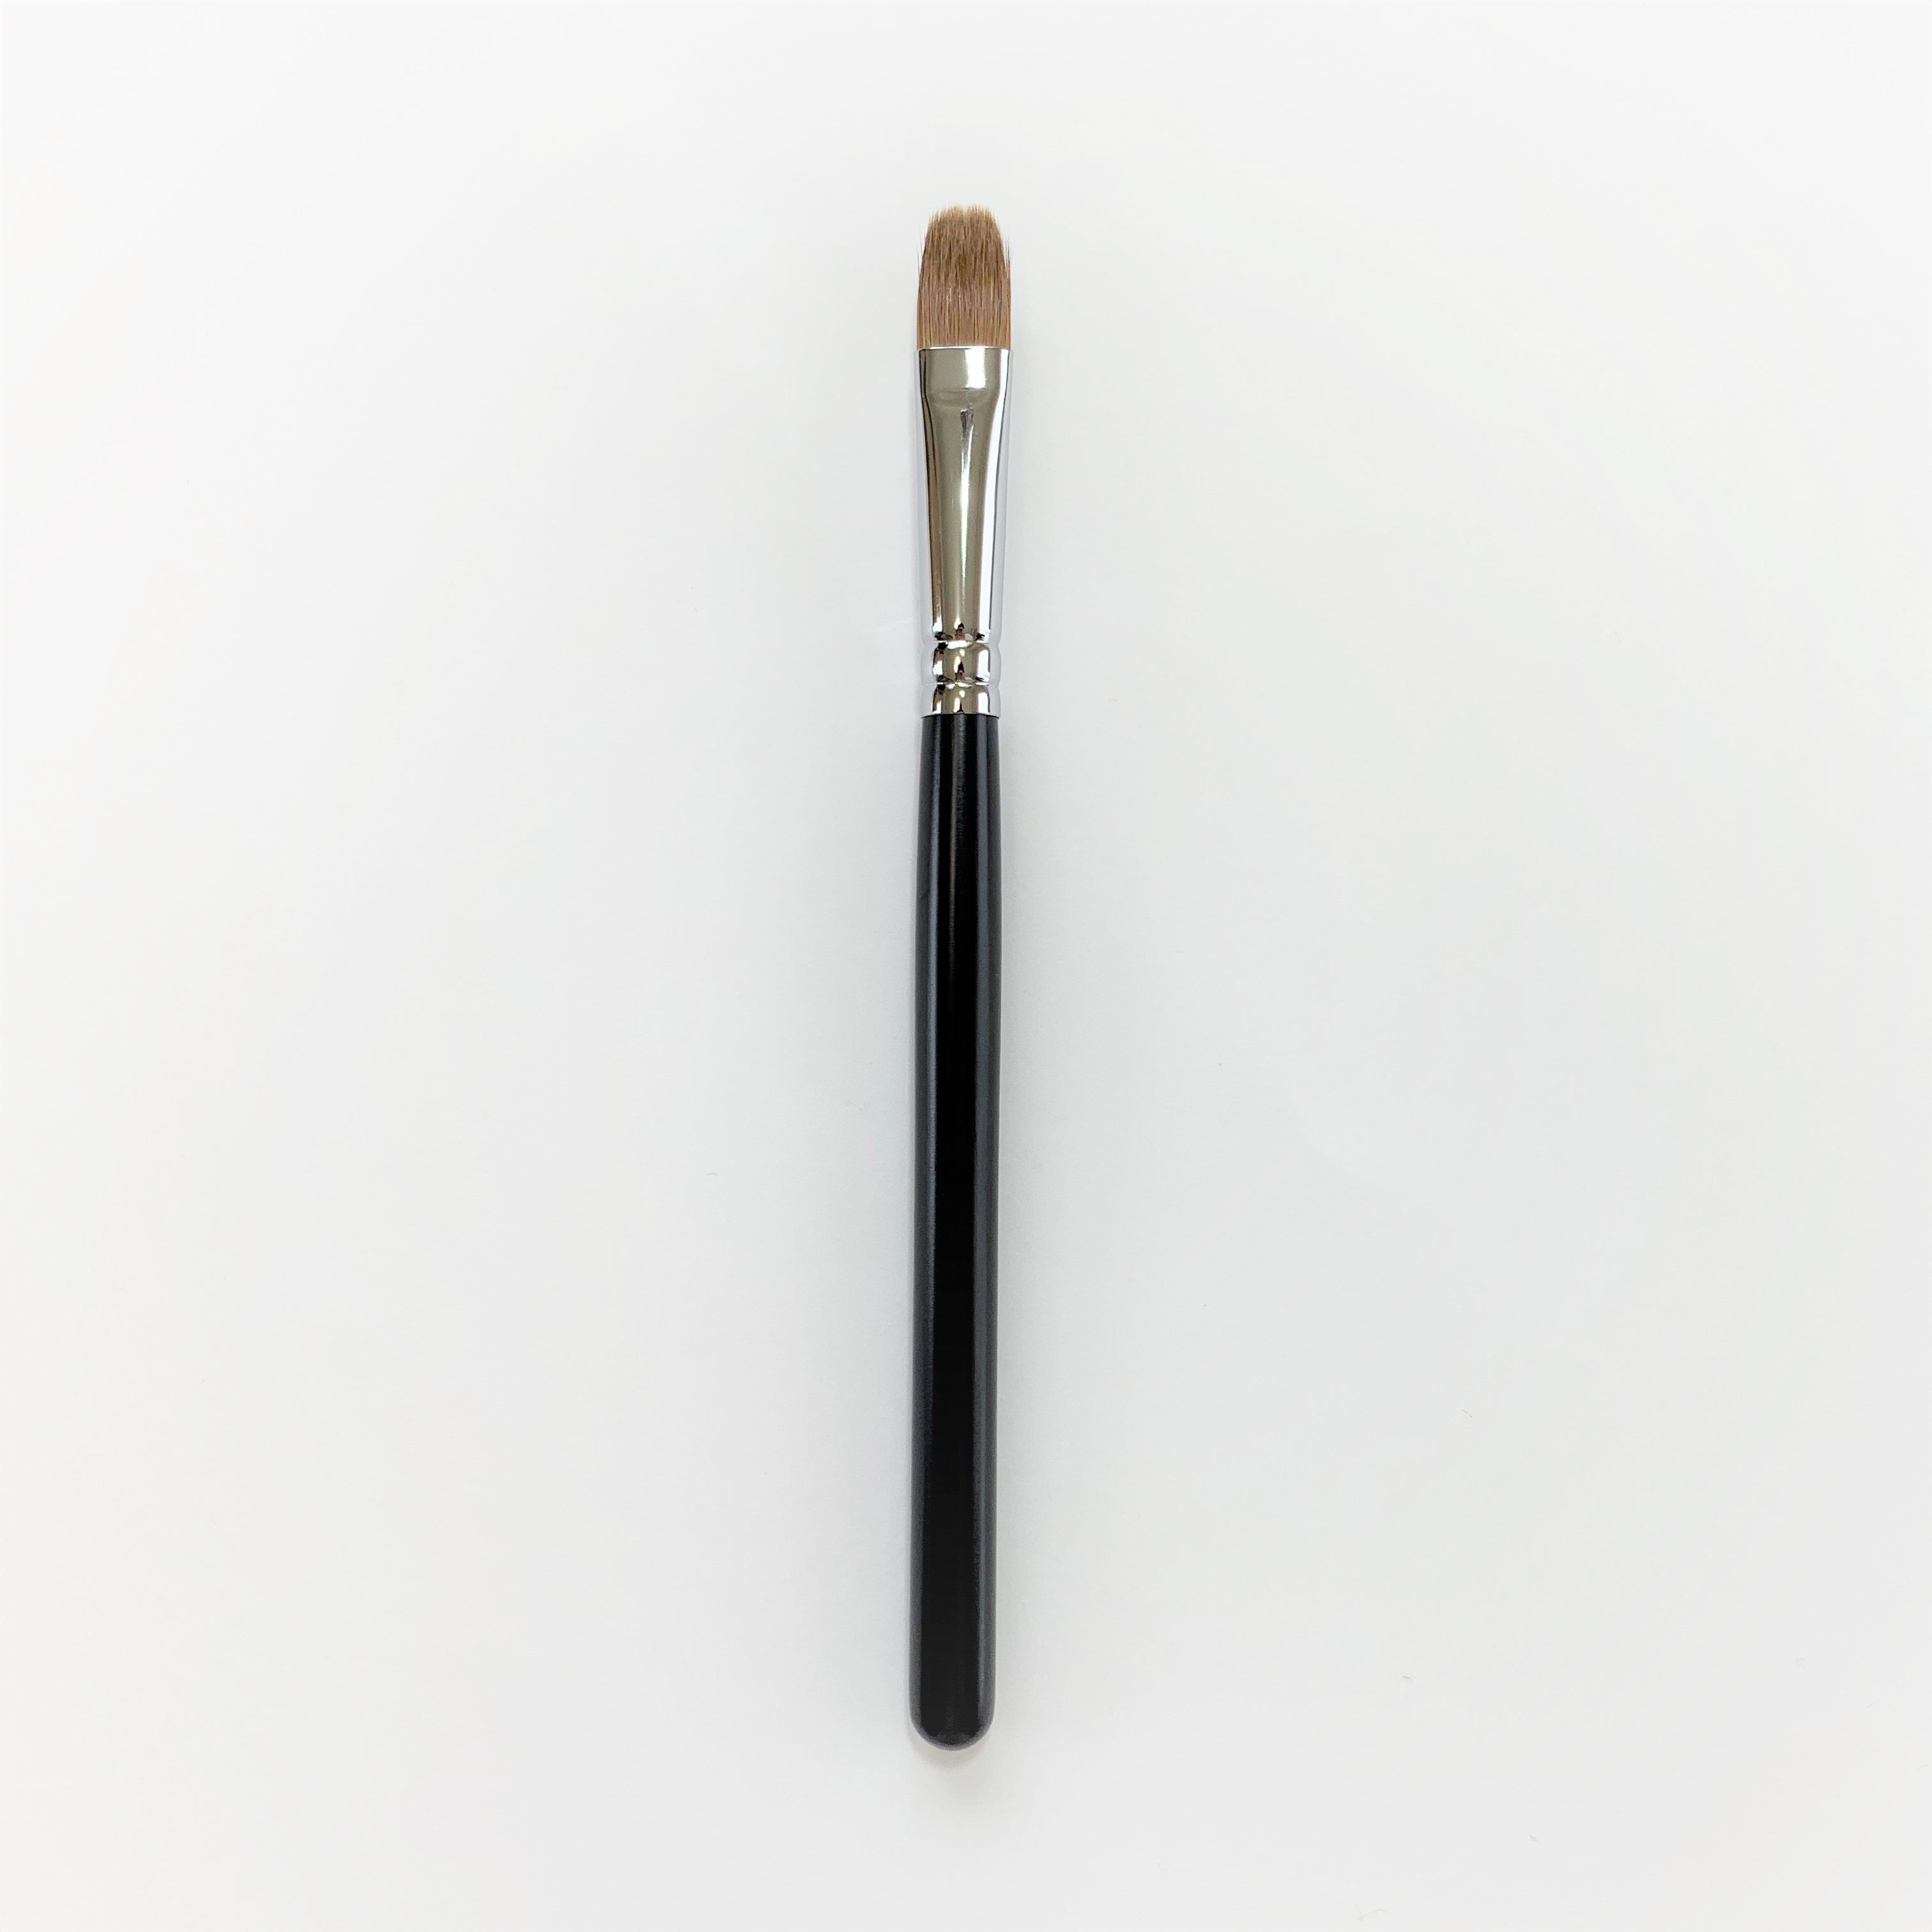 Koyudo Medium Eyeshadow Brush in Black - Fude Beauty, Japanese Makeup Brushes